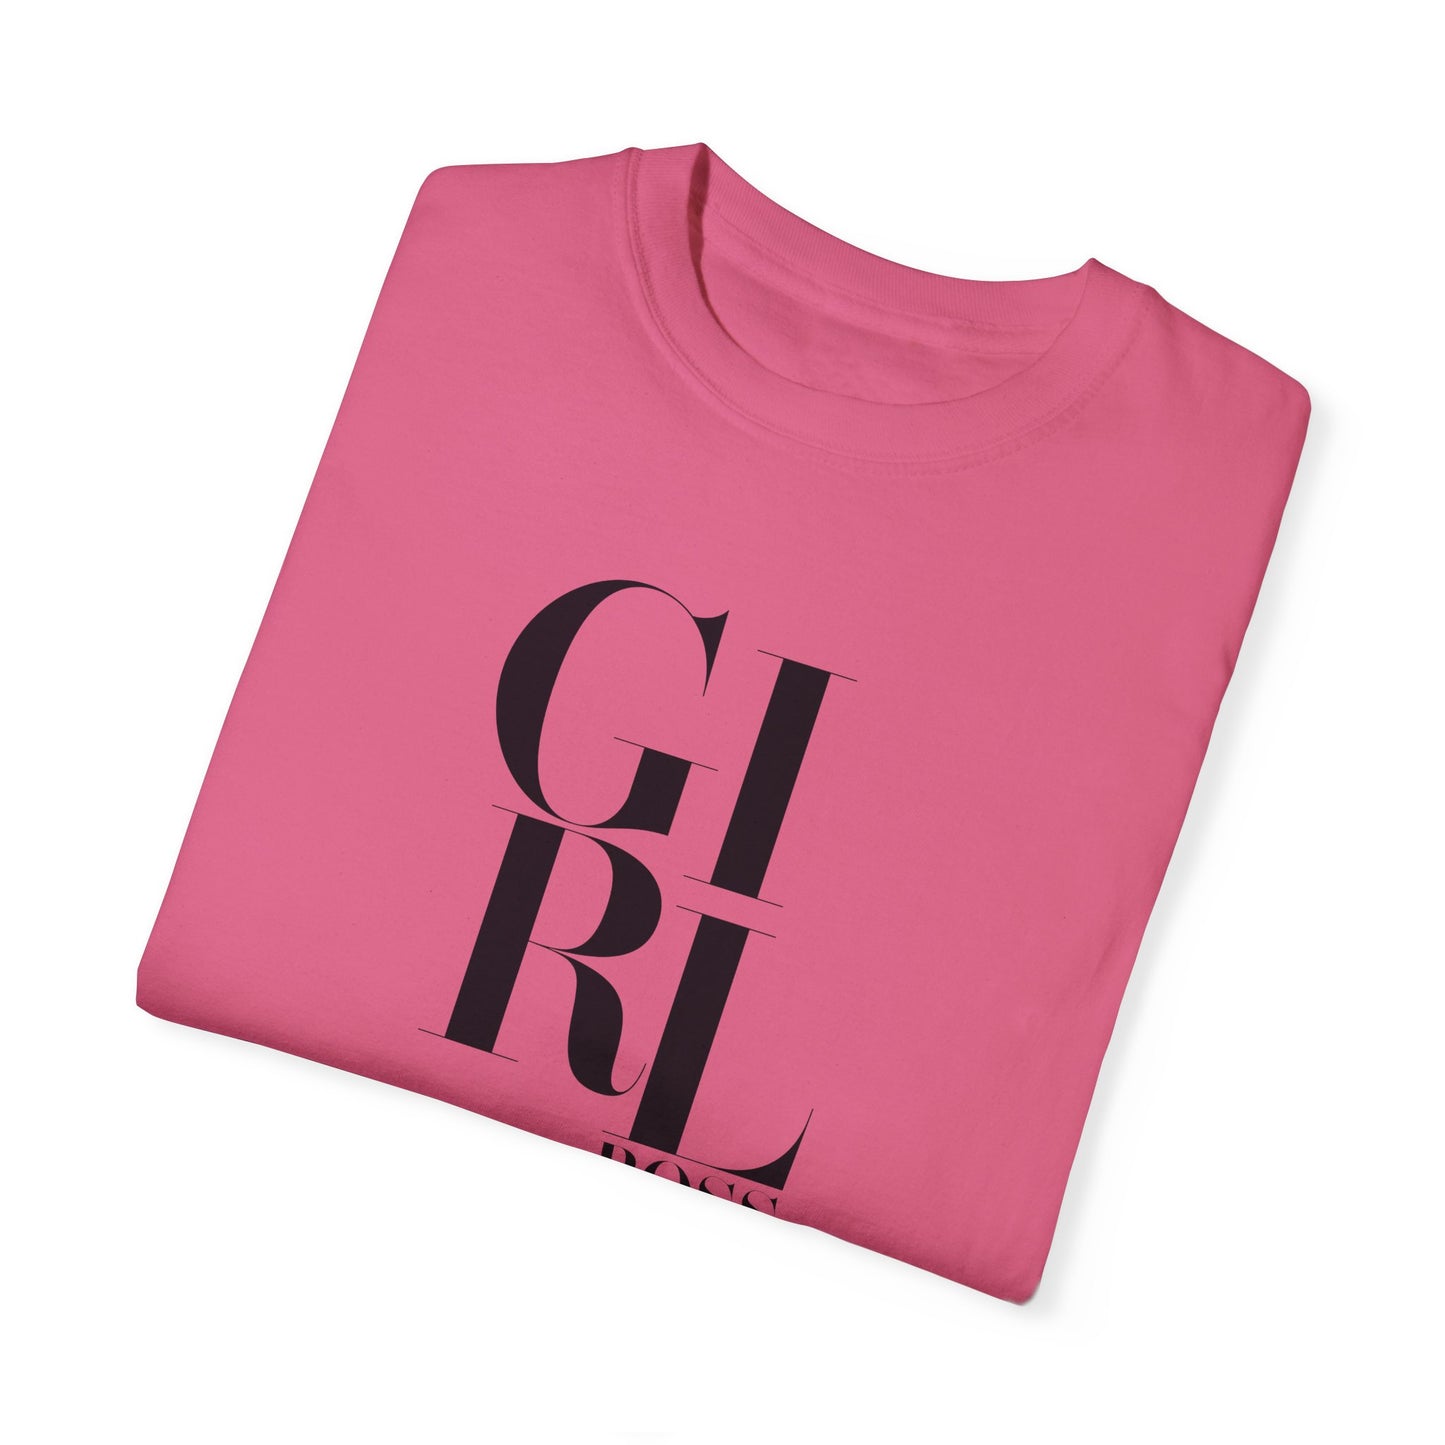 Inspirational Apparel (Girl Boss/ Unisex Garment-Dyed T-shirt)